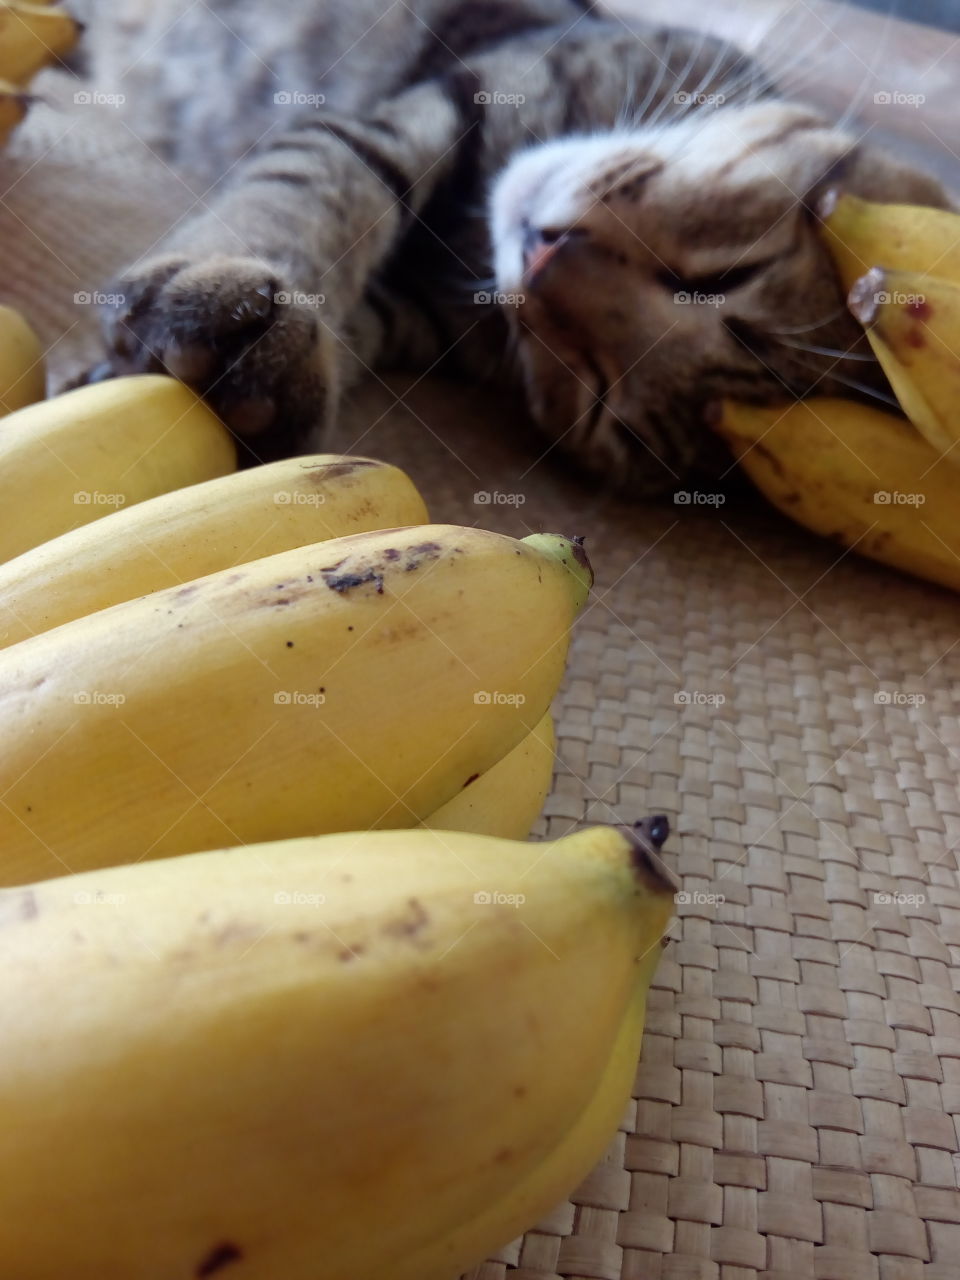 among bananas 05